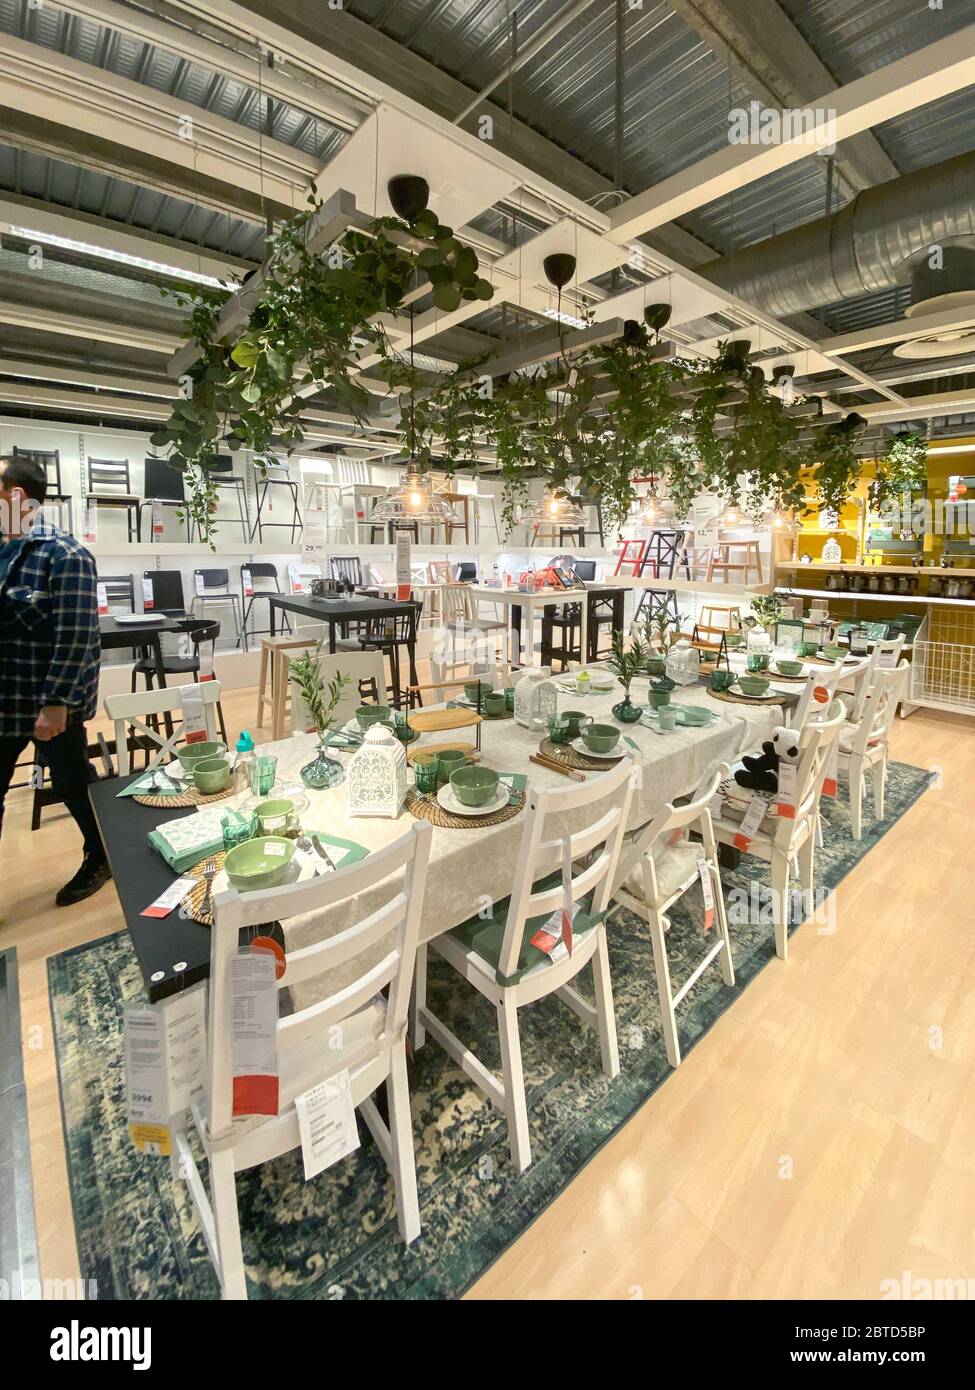 Paris, France - 18 janvier 2020: Homme marchant à l'intérieur de IKEA mobilier magasin d'appareils design suédois - salon aménagé table de jardin Banque D'Images